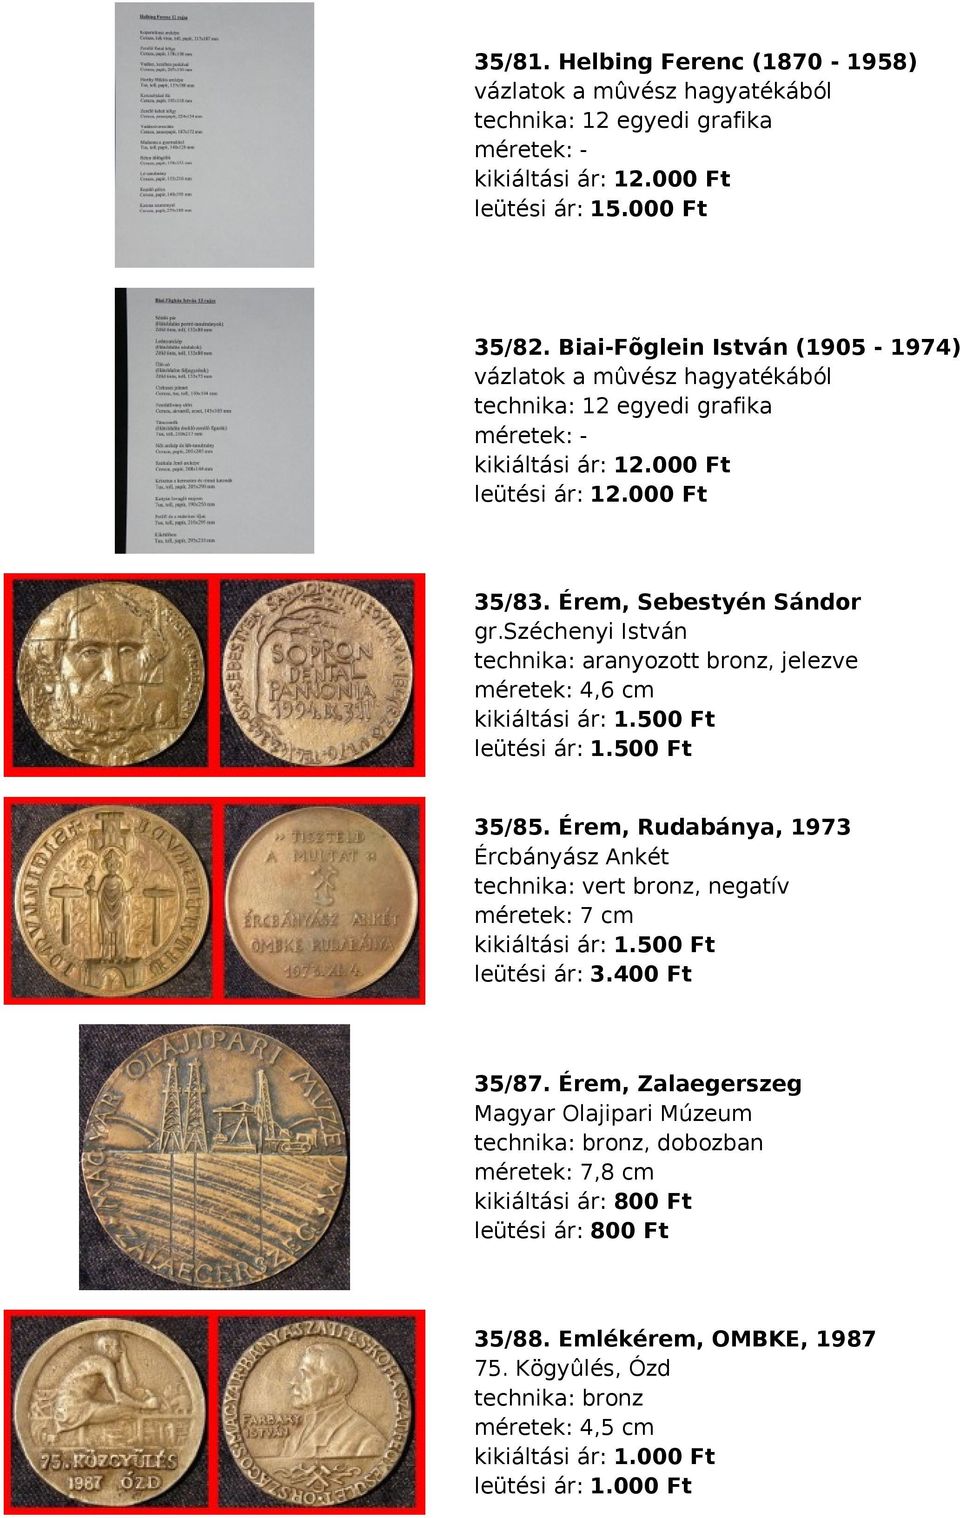 széchenyi István technika: aranyozott bronz, jelezve méretek: 4,6 cm kikiáltási ár: 1.500 Ft leütési ár: 1.500 Ft 35/85.